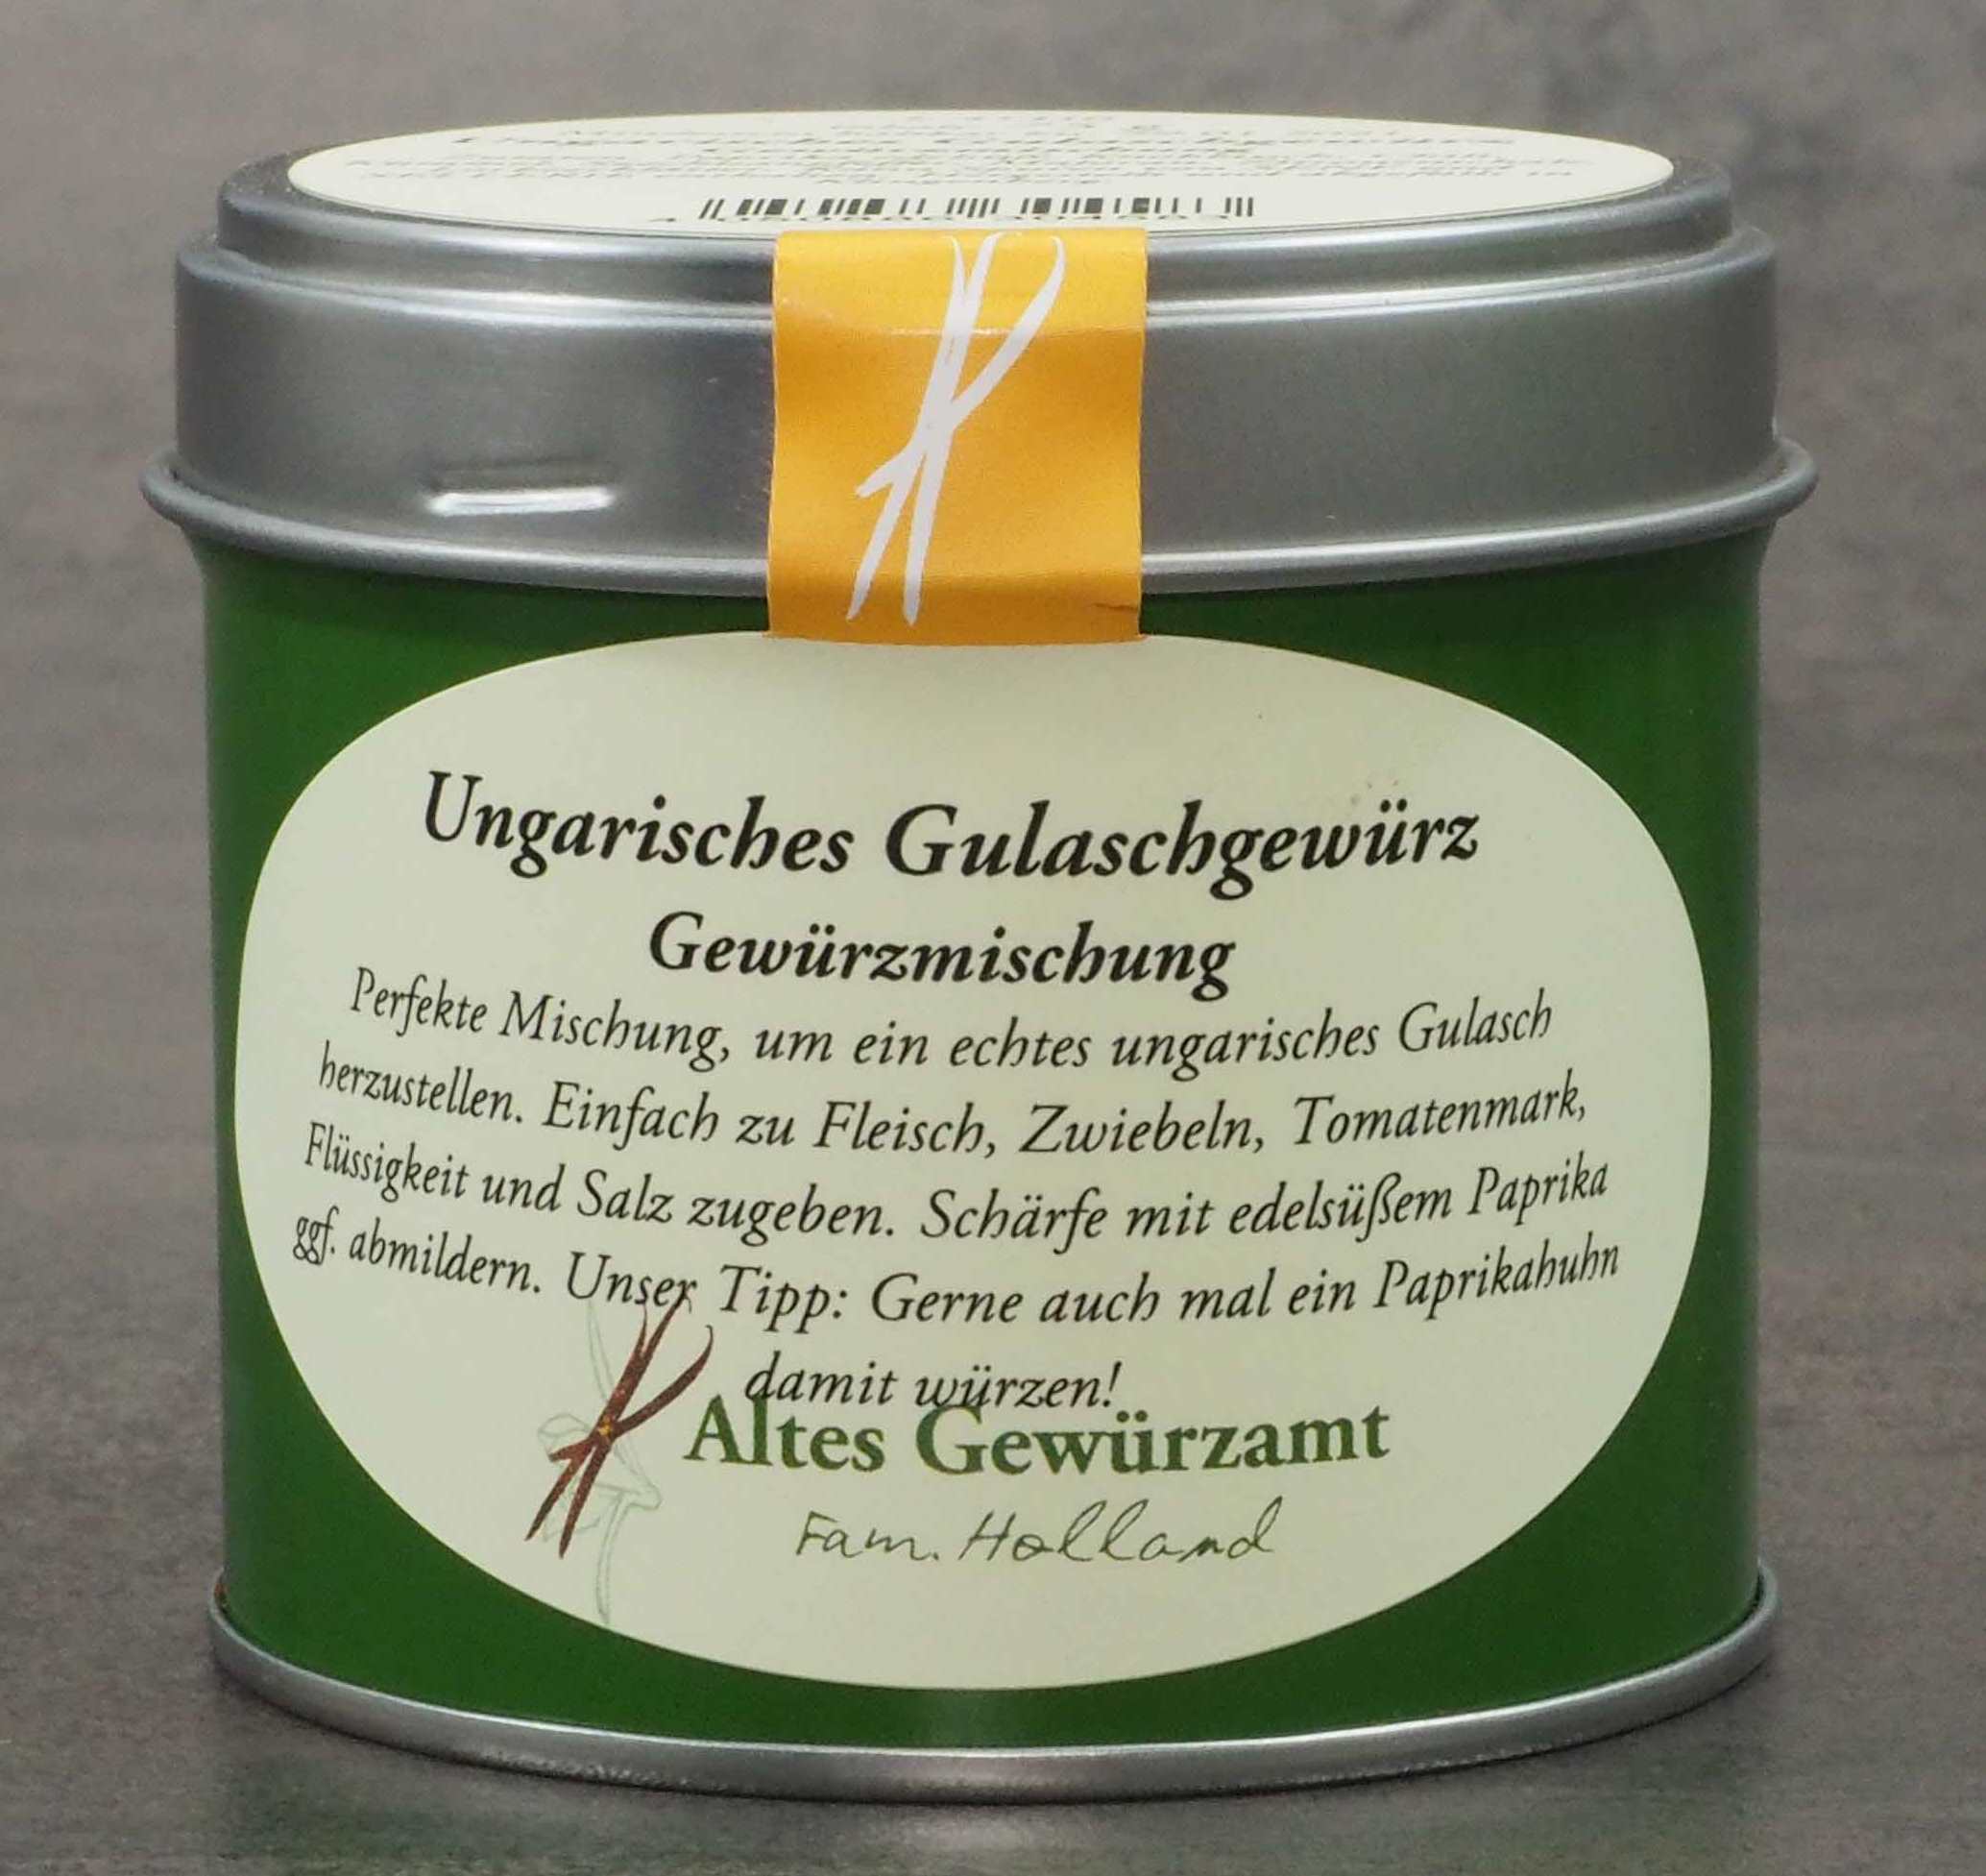 Ungarisches Gulaschgewürz, Altes Gewürzamt, Ingo Holland 0,075 kg